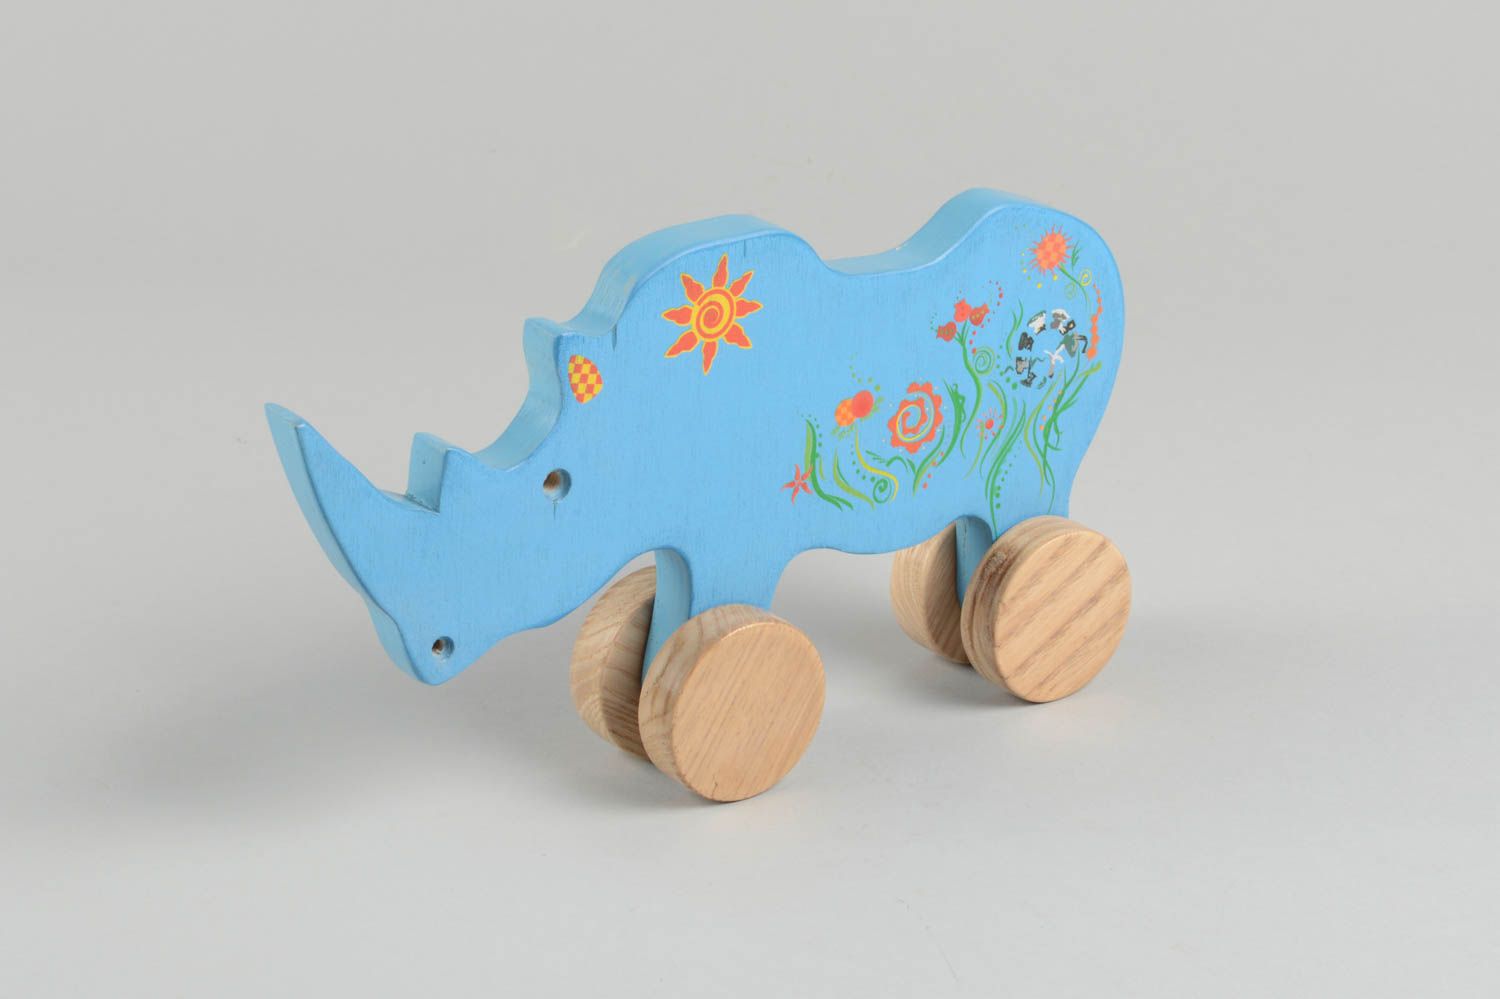 Игрушка ручной работы игрушка из дерева носорог на колесиках игрушка-каталка фото 3